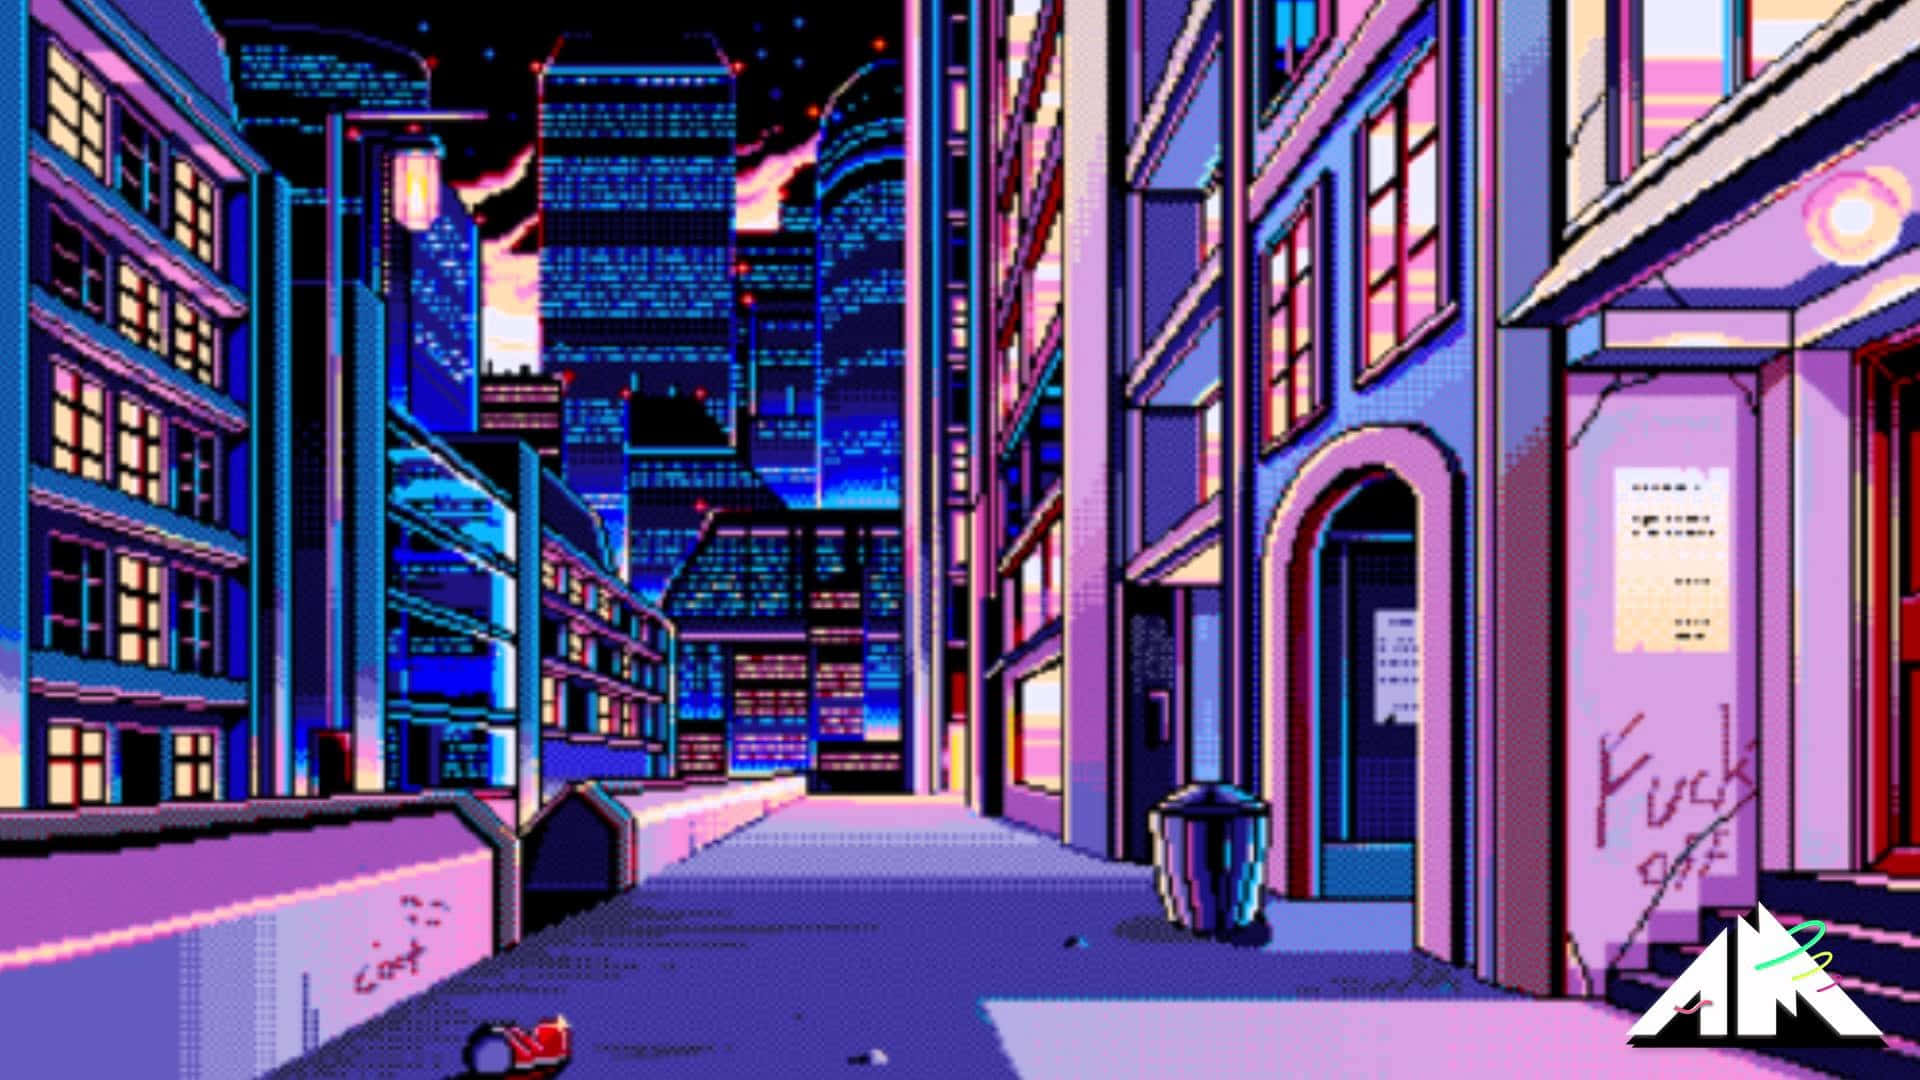 Unaimagen De Arte En Píxeles De Una Ciudad Por La Noche. Fondo de pantalla